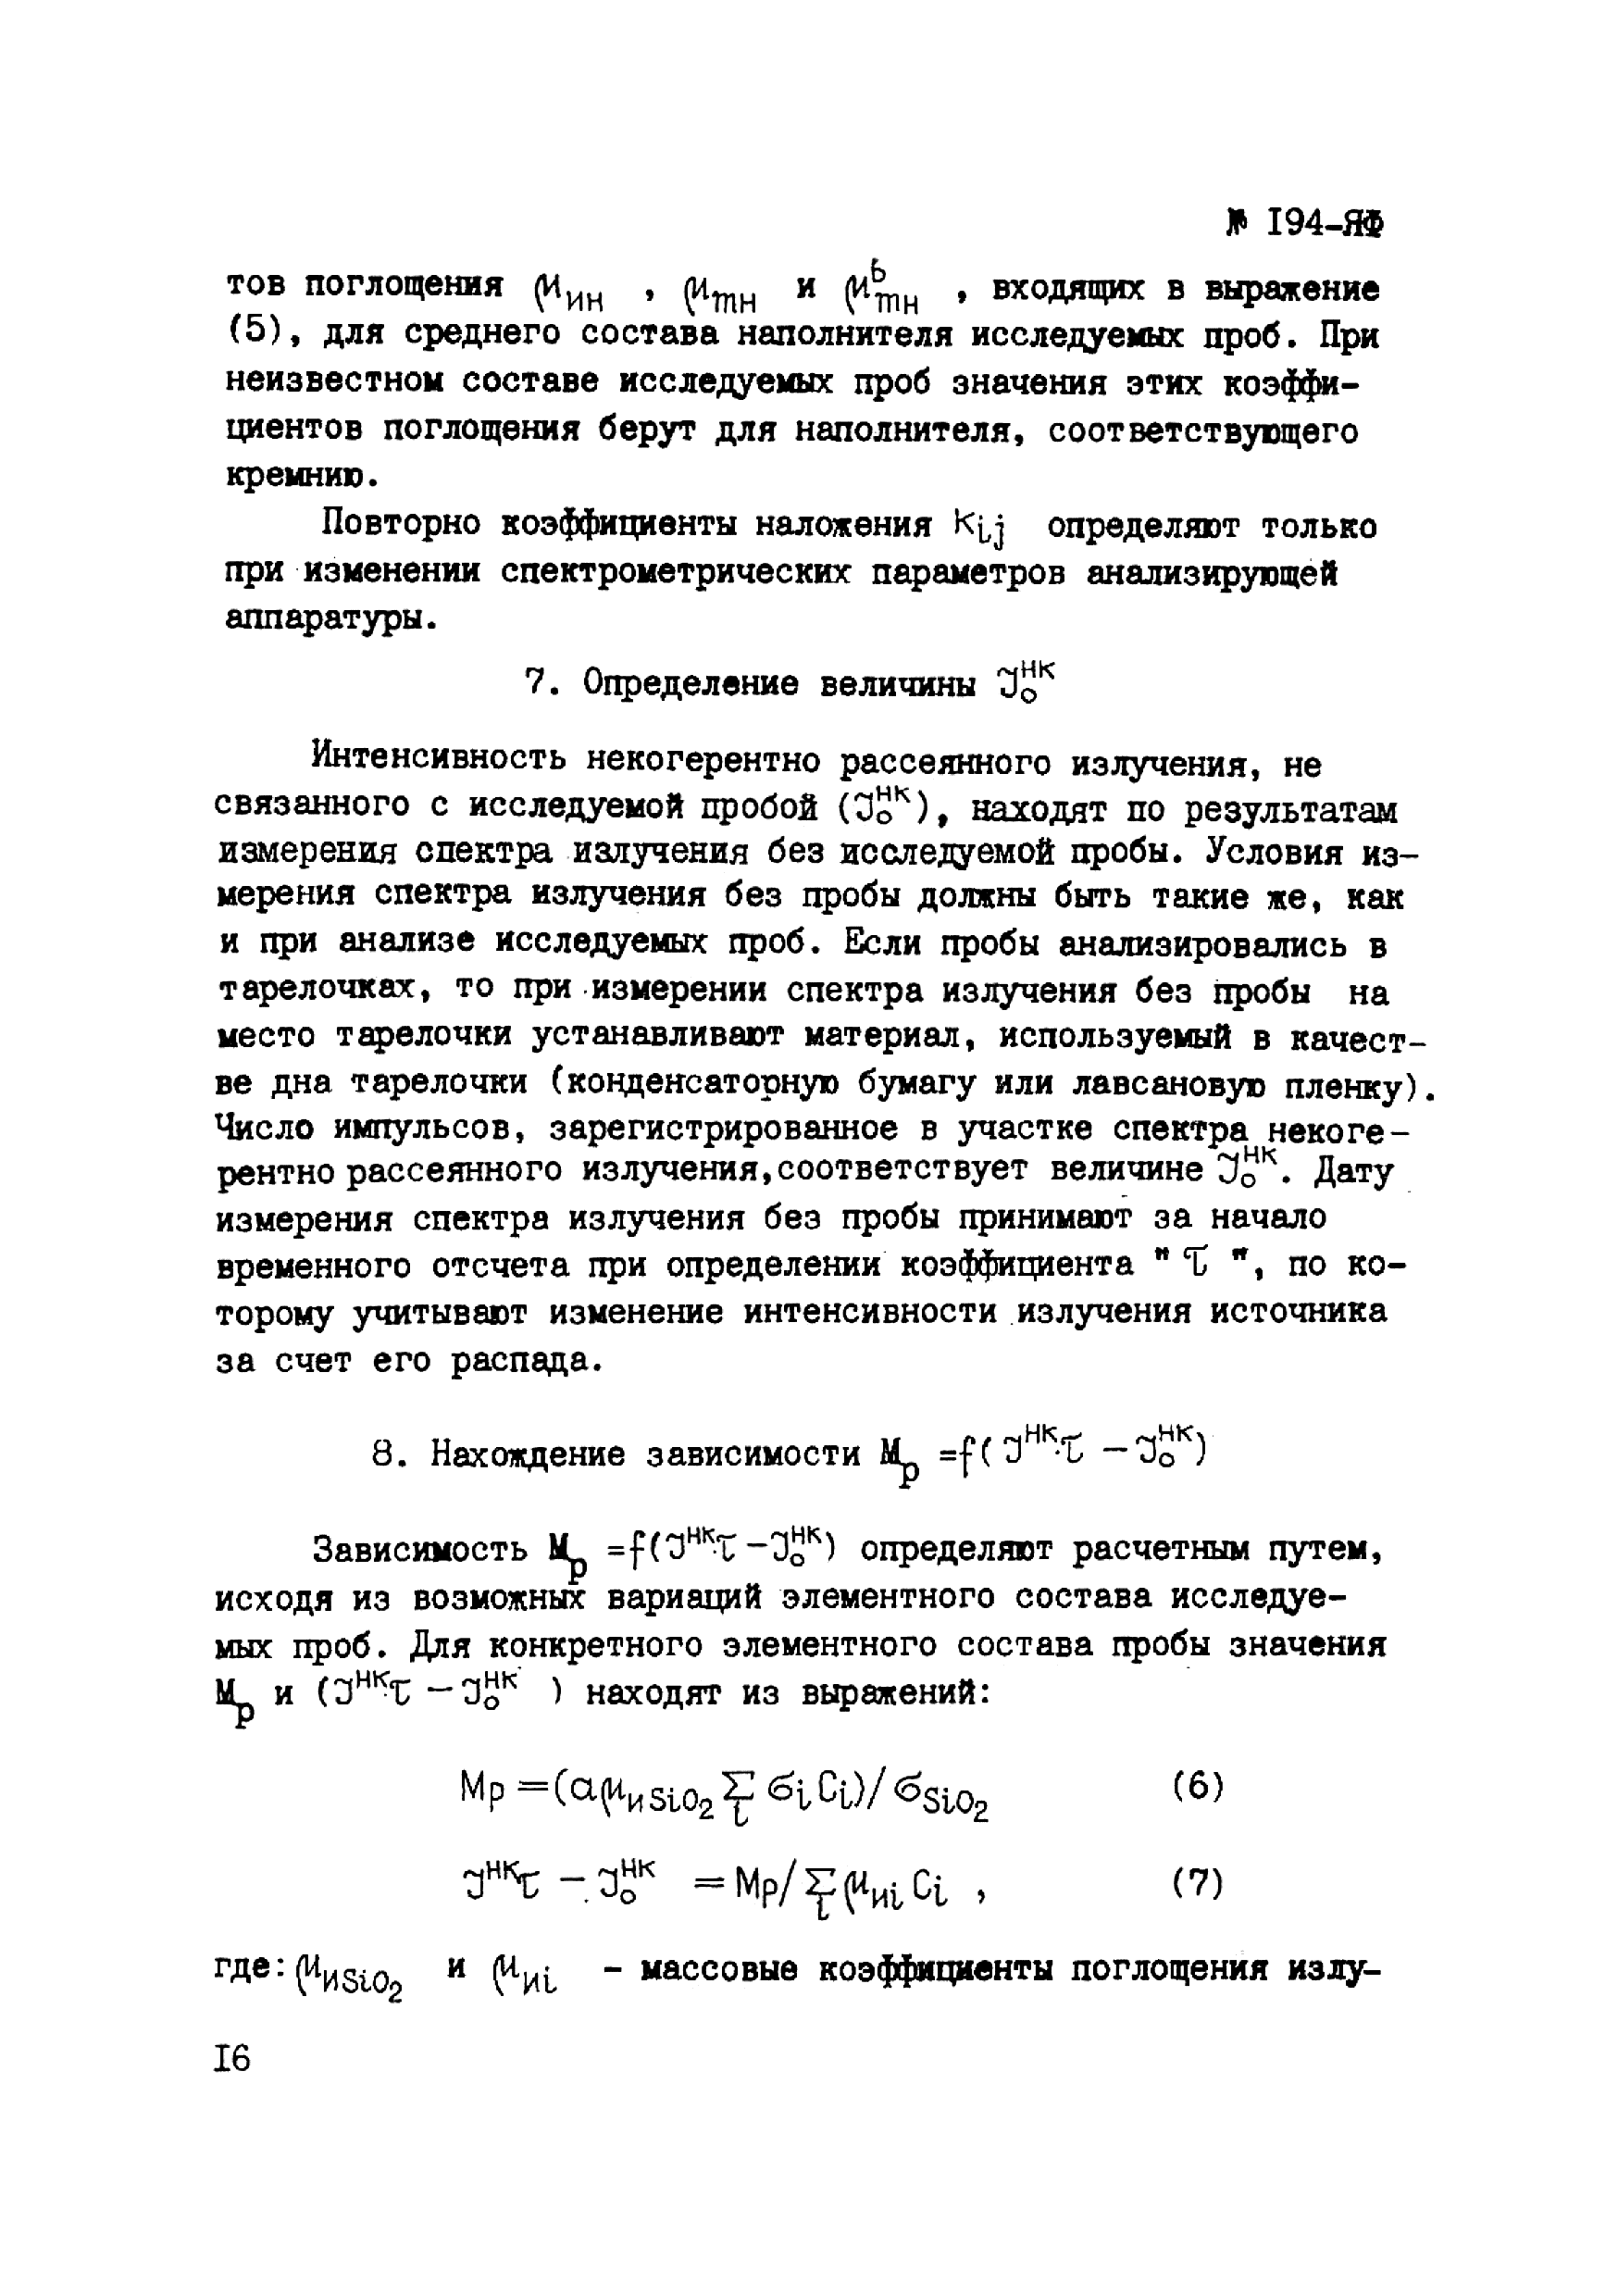 Инструкция НСАМ 194-ЯФ